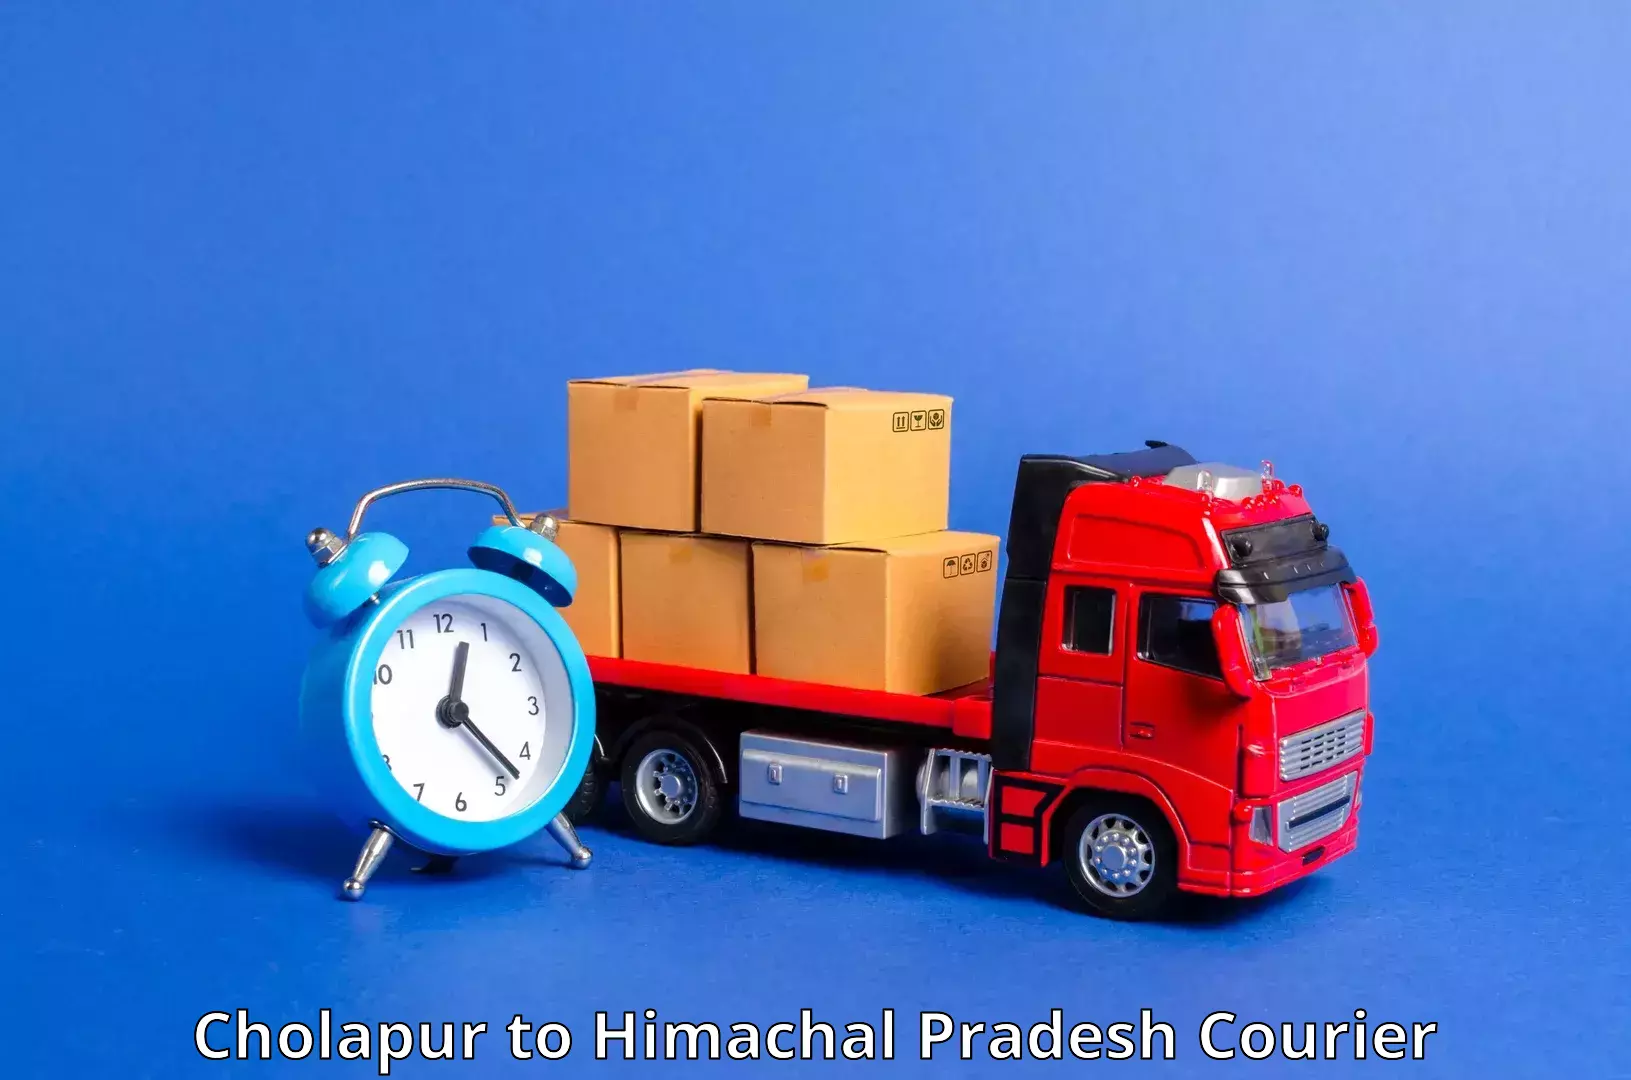 Express package handling Cholapur to Jaisinghpur